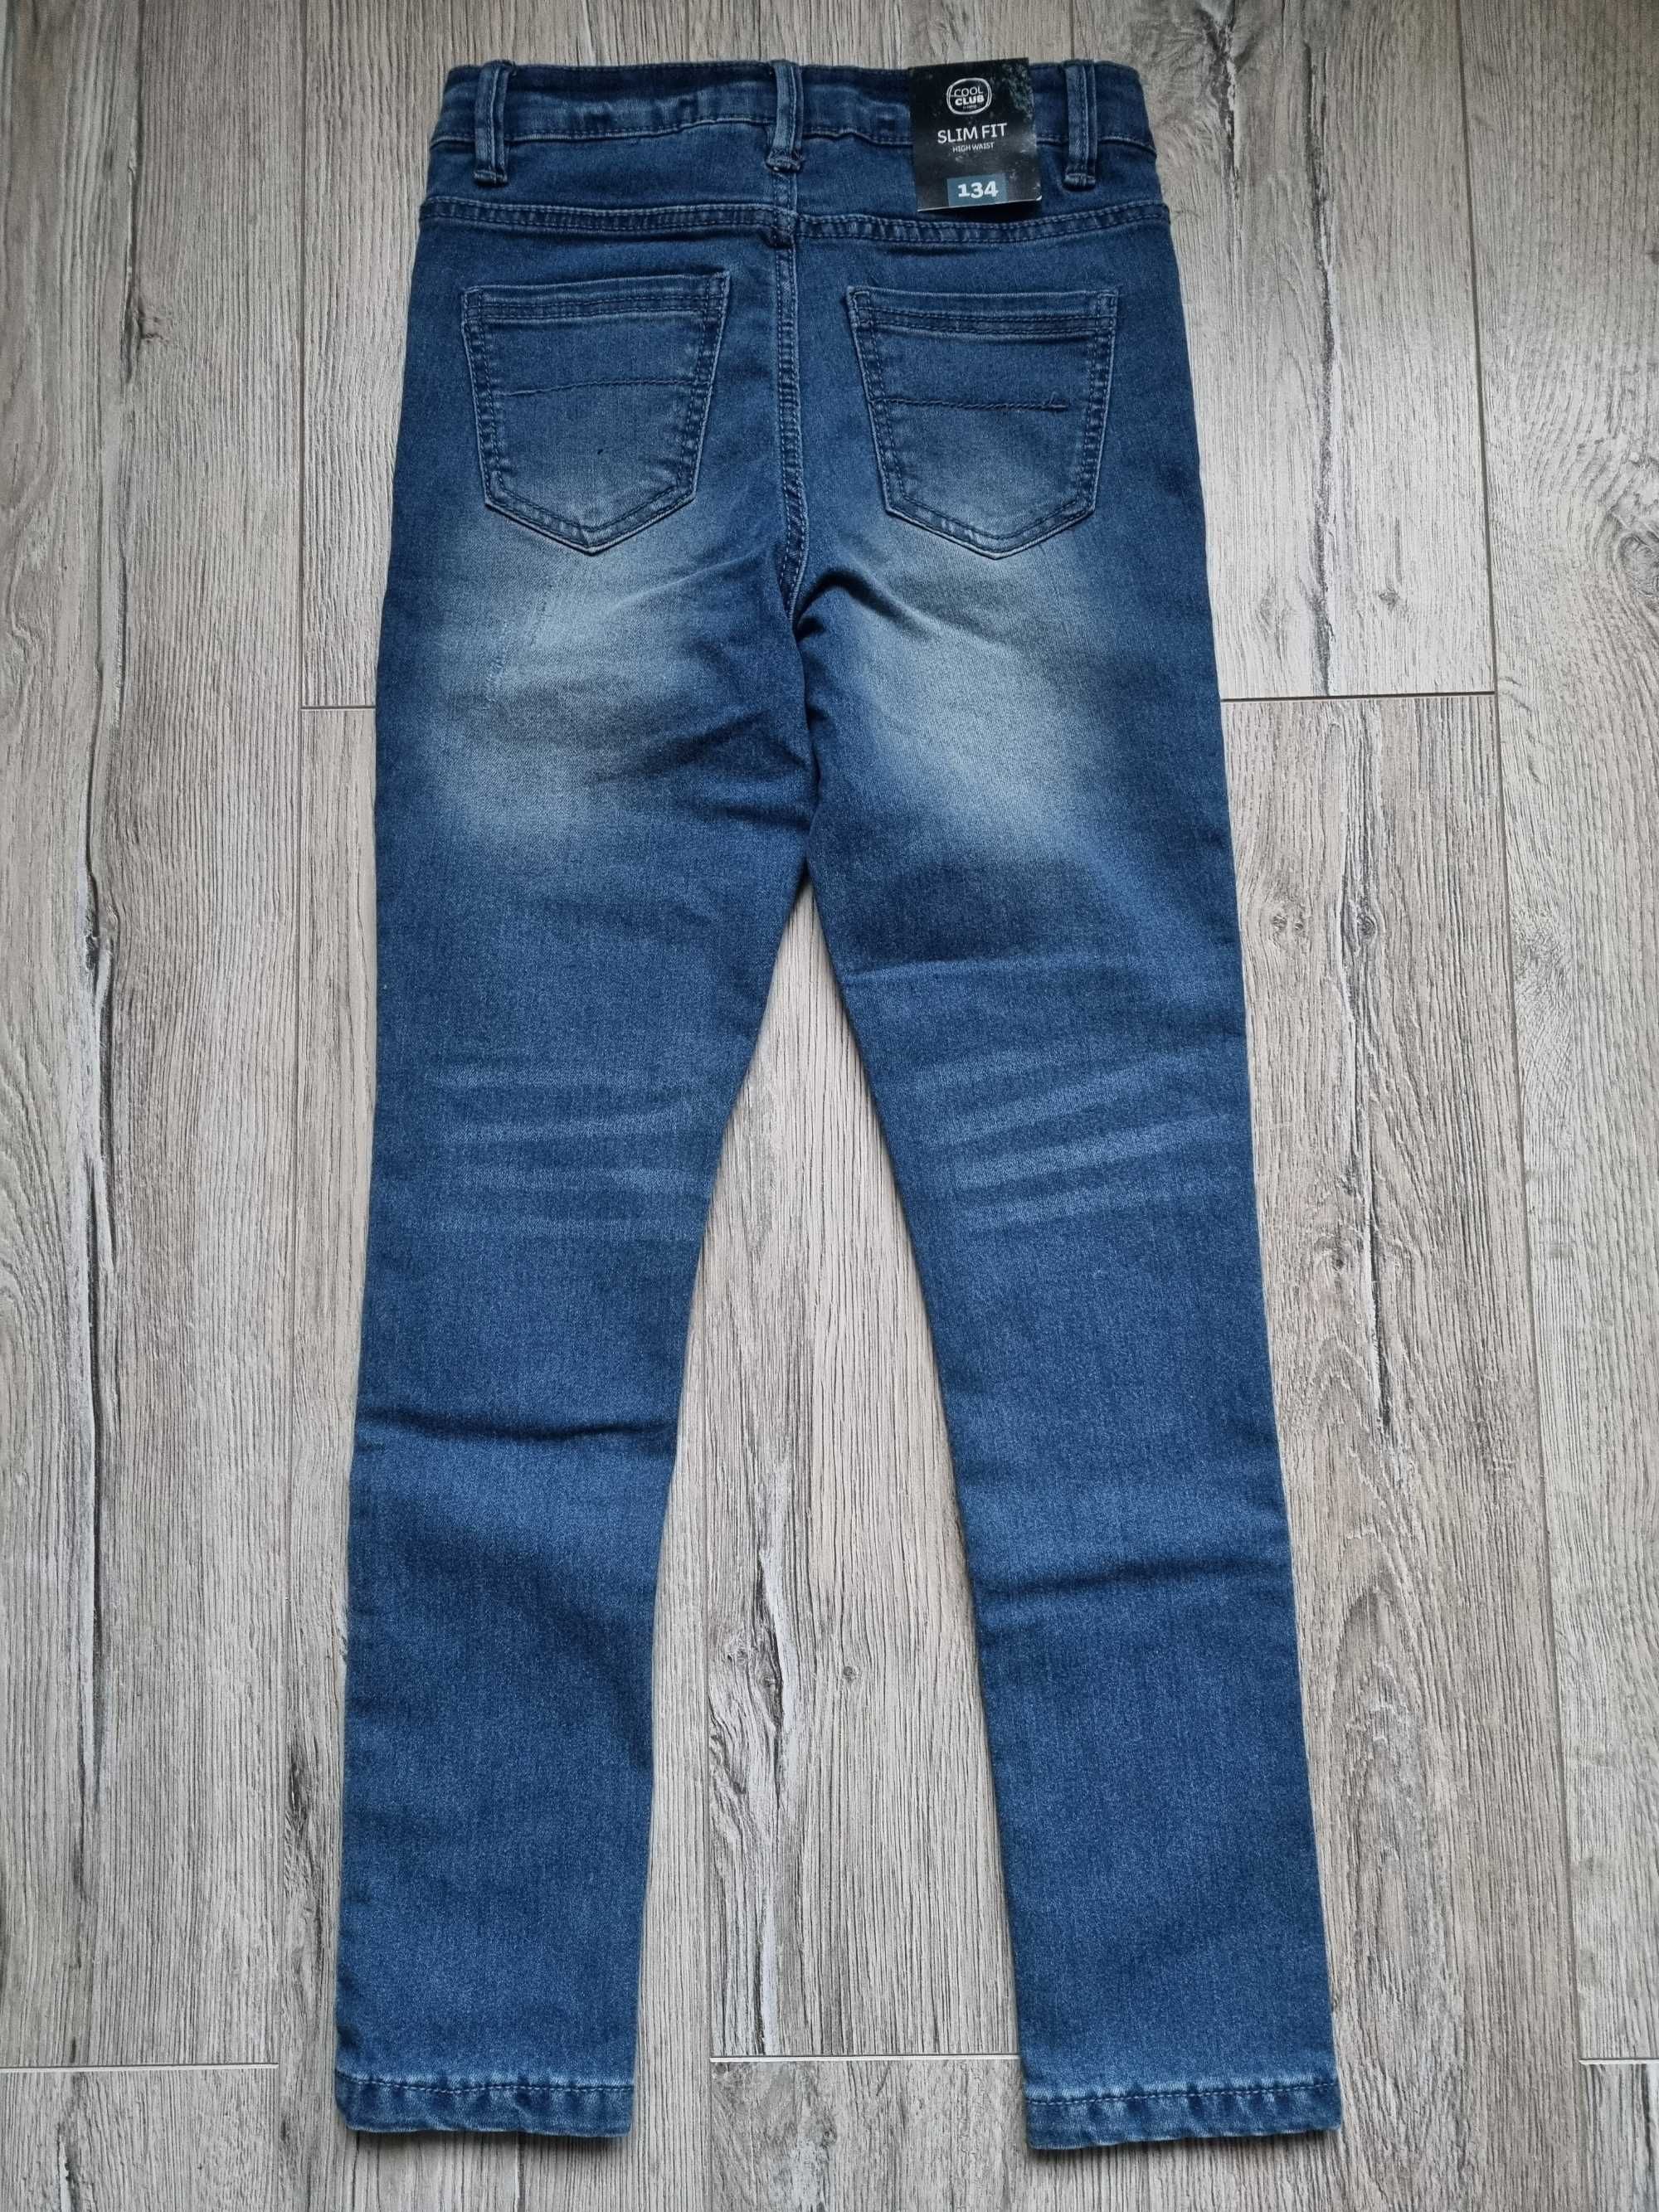 Spodnie jeansowe Cool Club rozmiar 134 cm SLIM